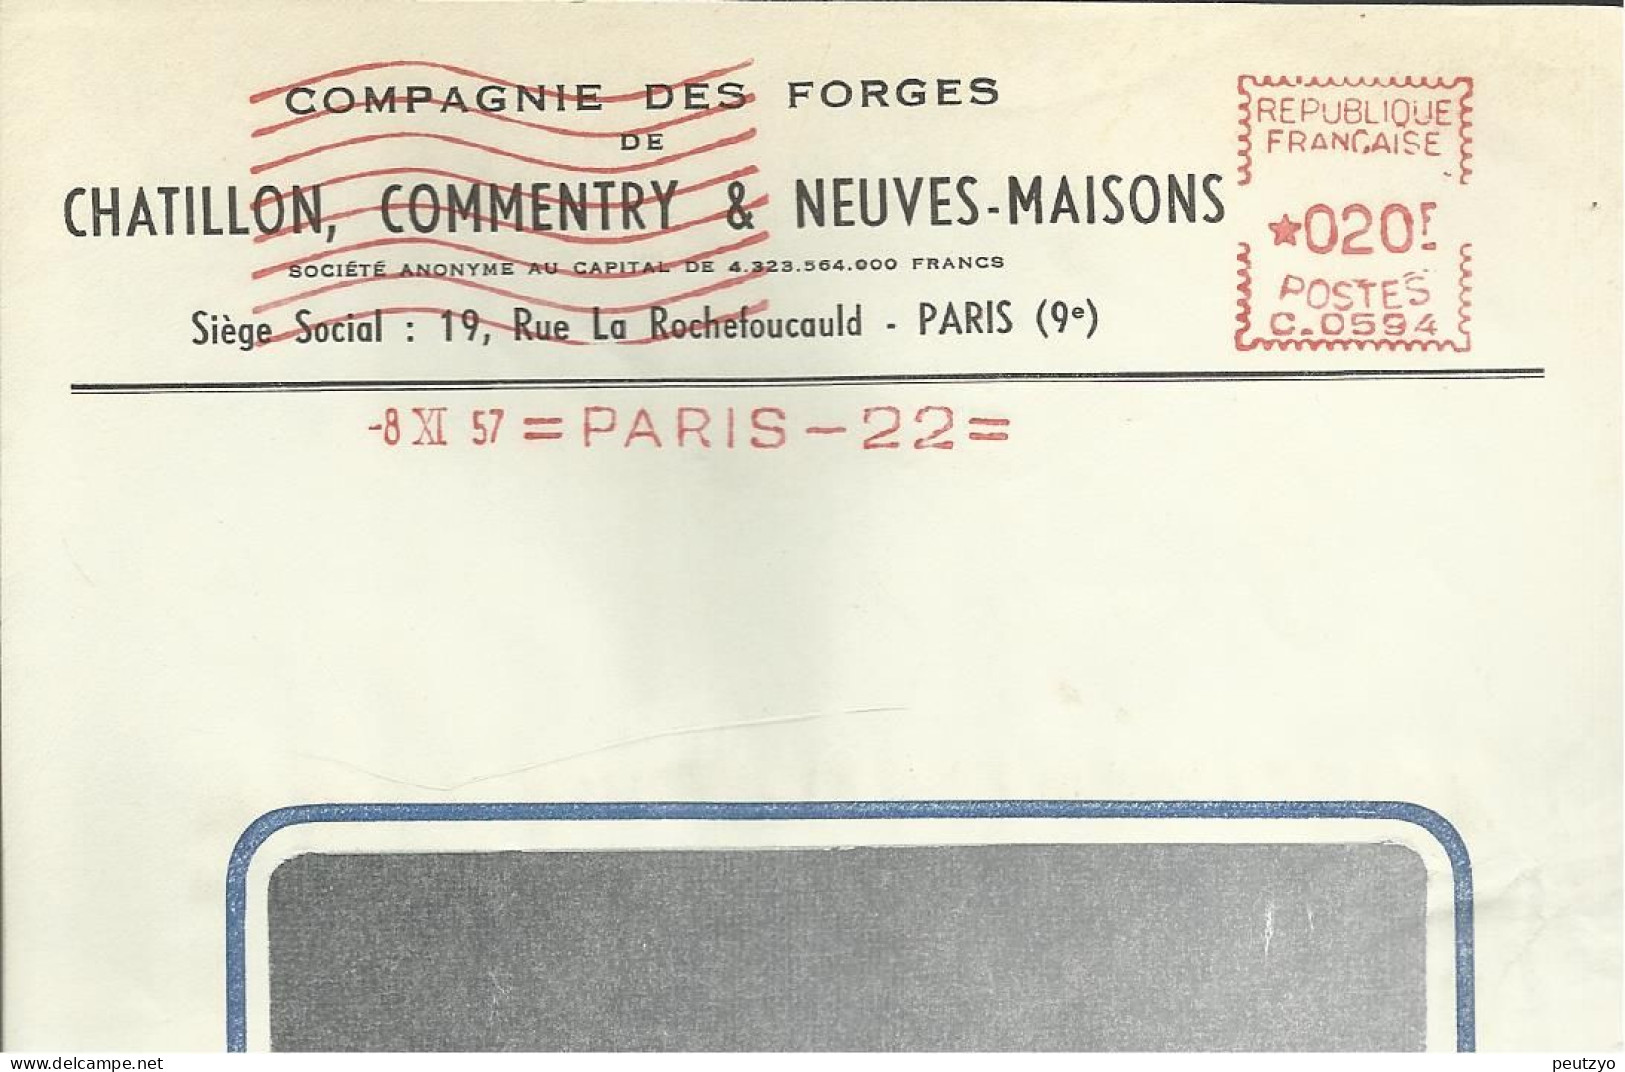 Lettre  EMA  Havas C 1957 Compagnie Des Forges  Chatillon ,commentry & Neuves Maisons 54 Usines Metier 75 Paris   A20/19 - Fabbriche E Imprese